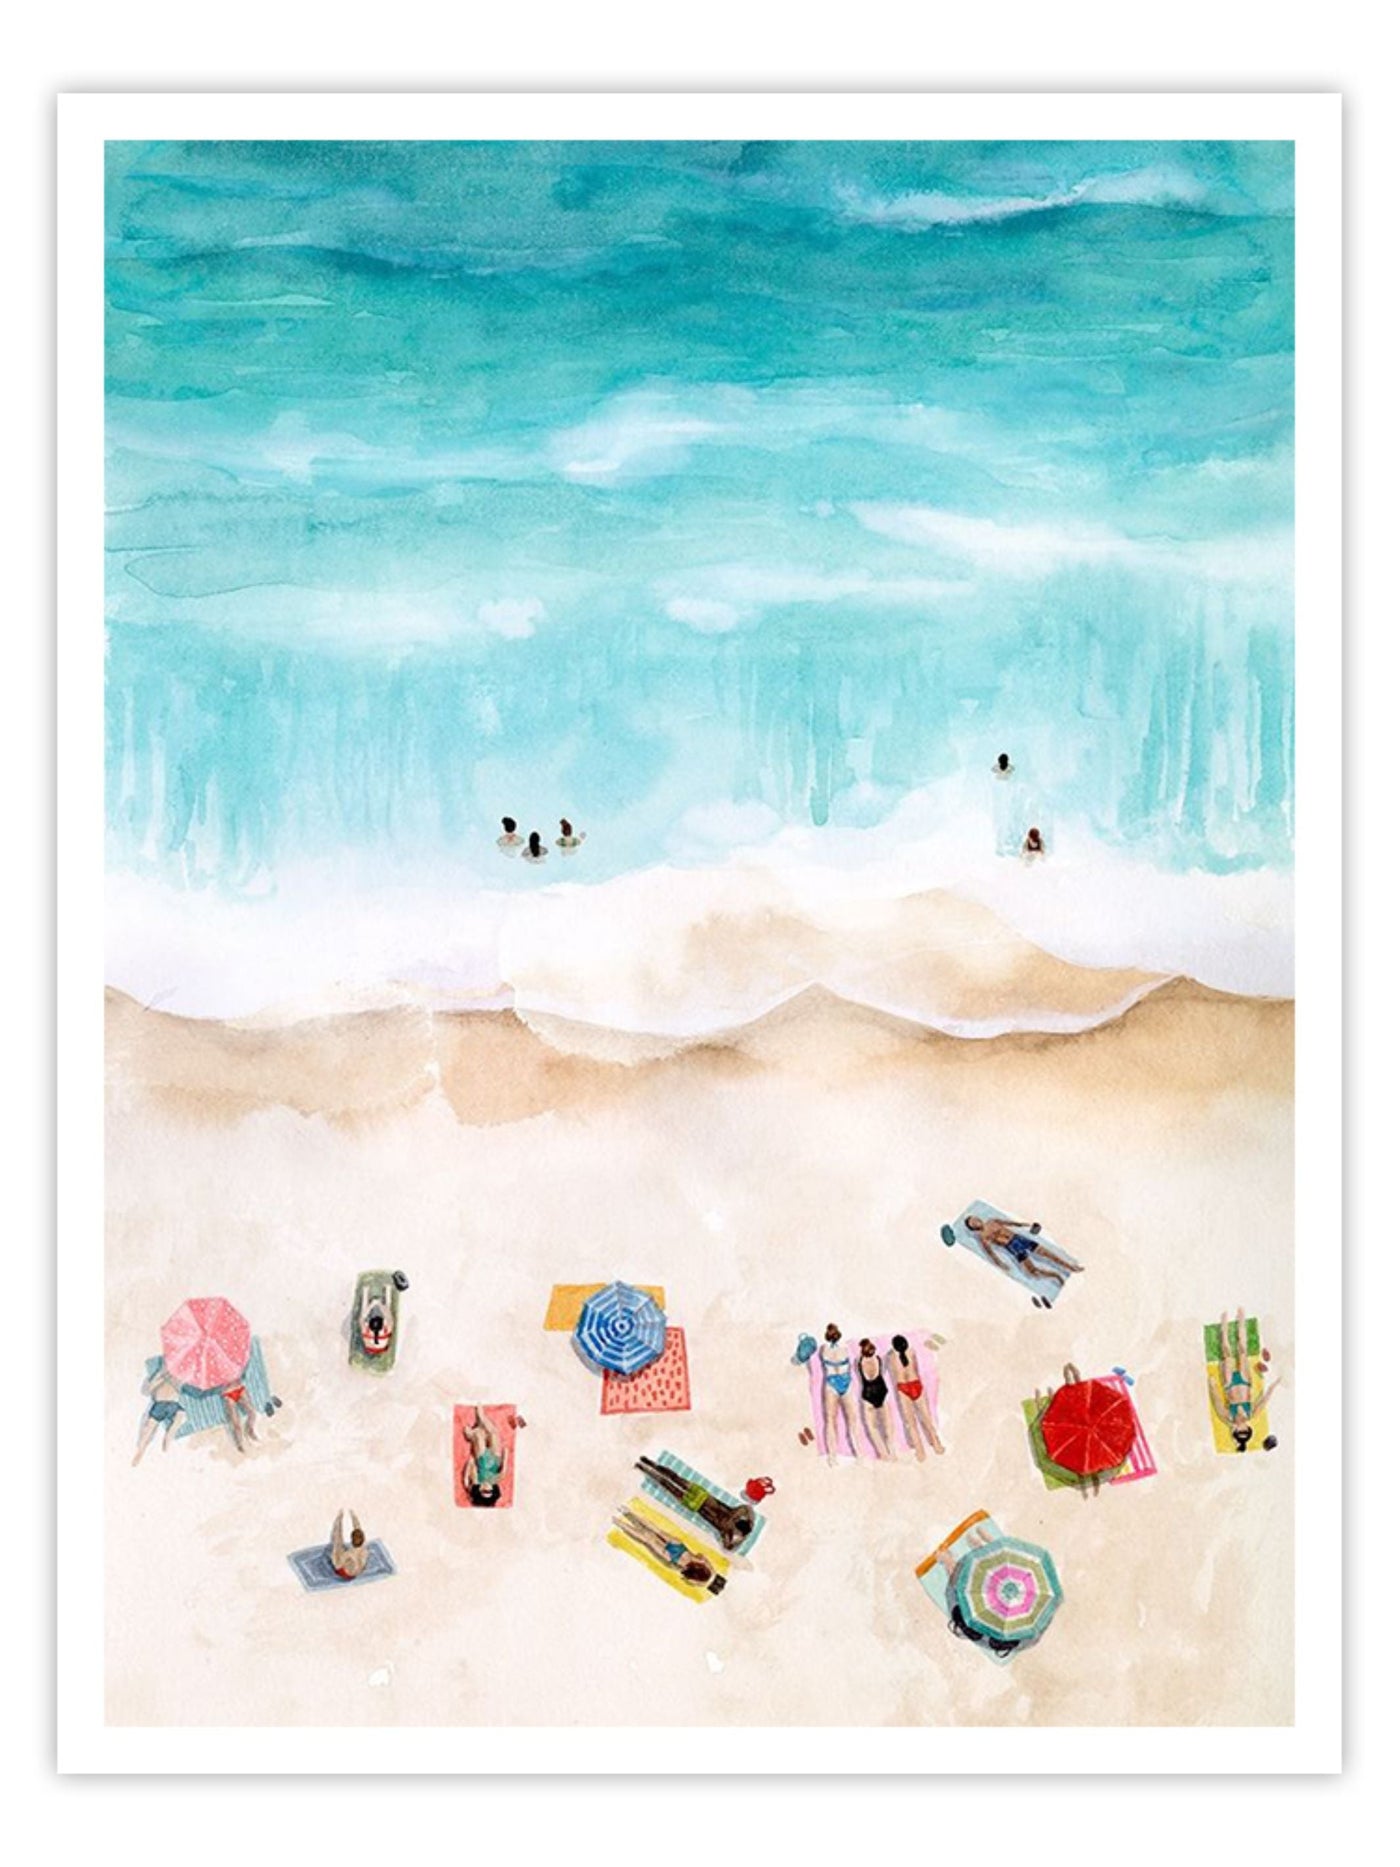 Beach Week I - Wall Prints